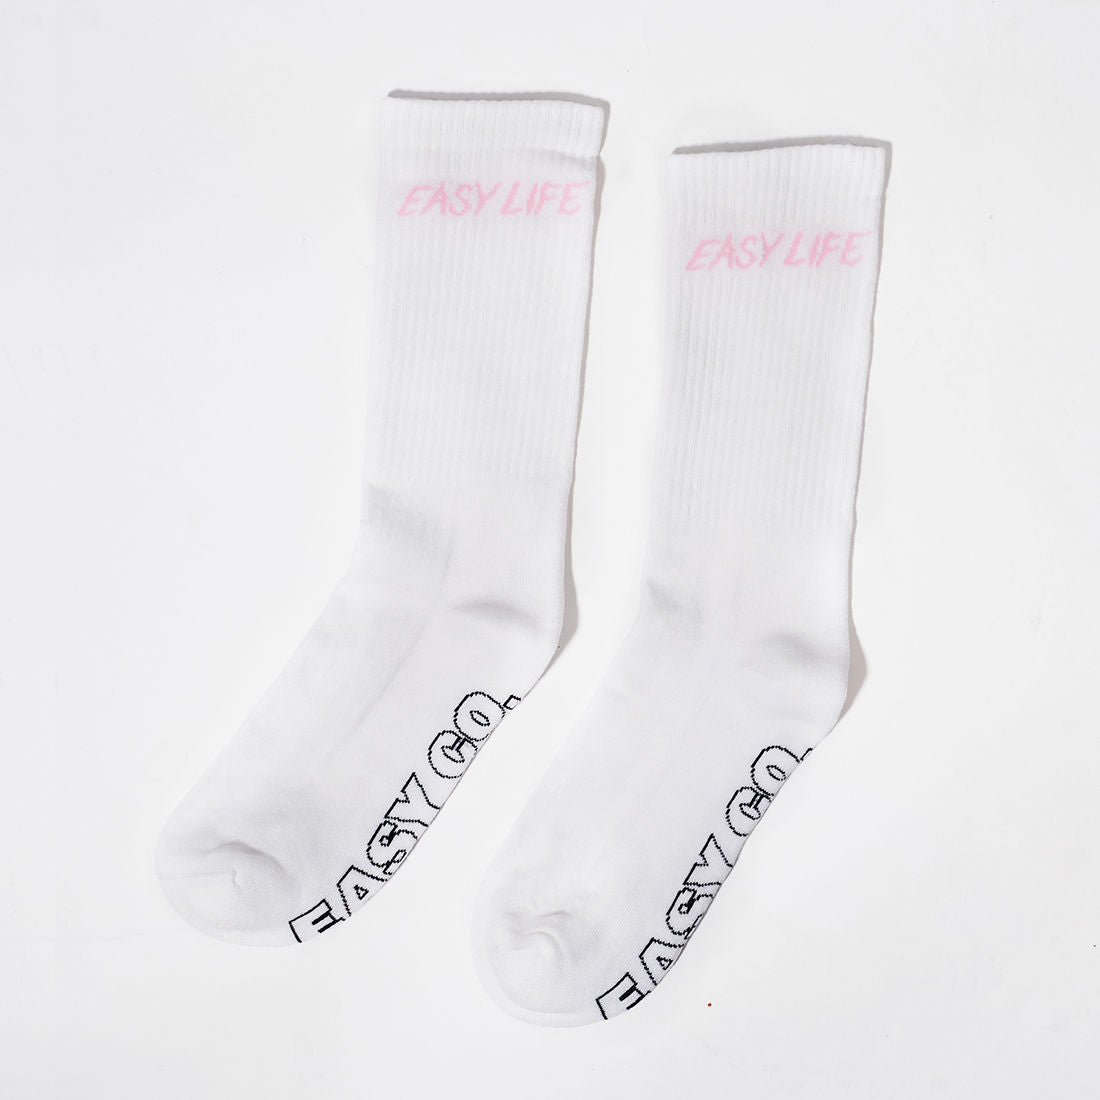 Easylife Socks